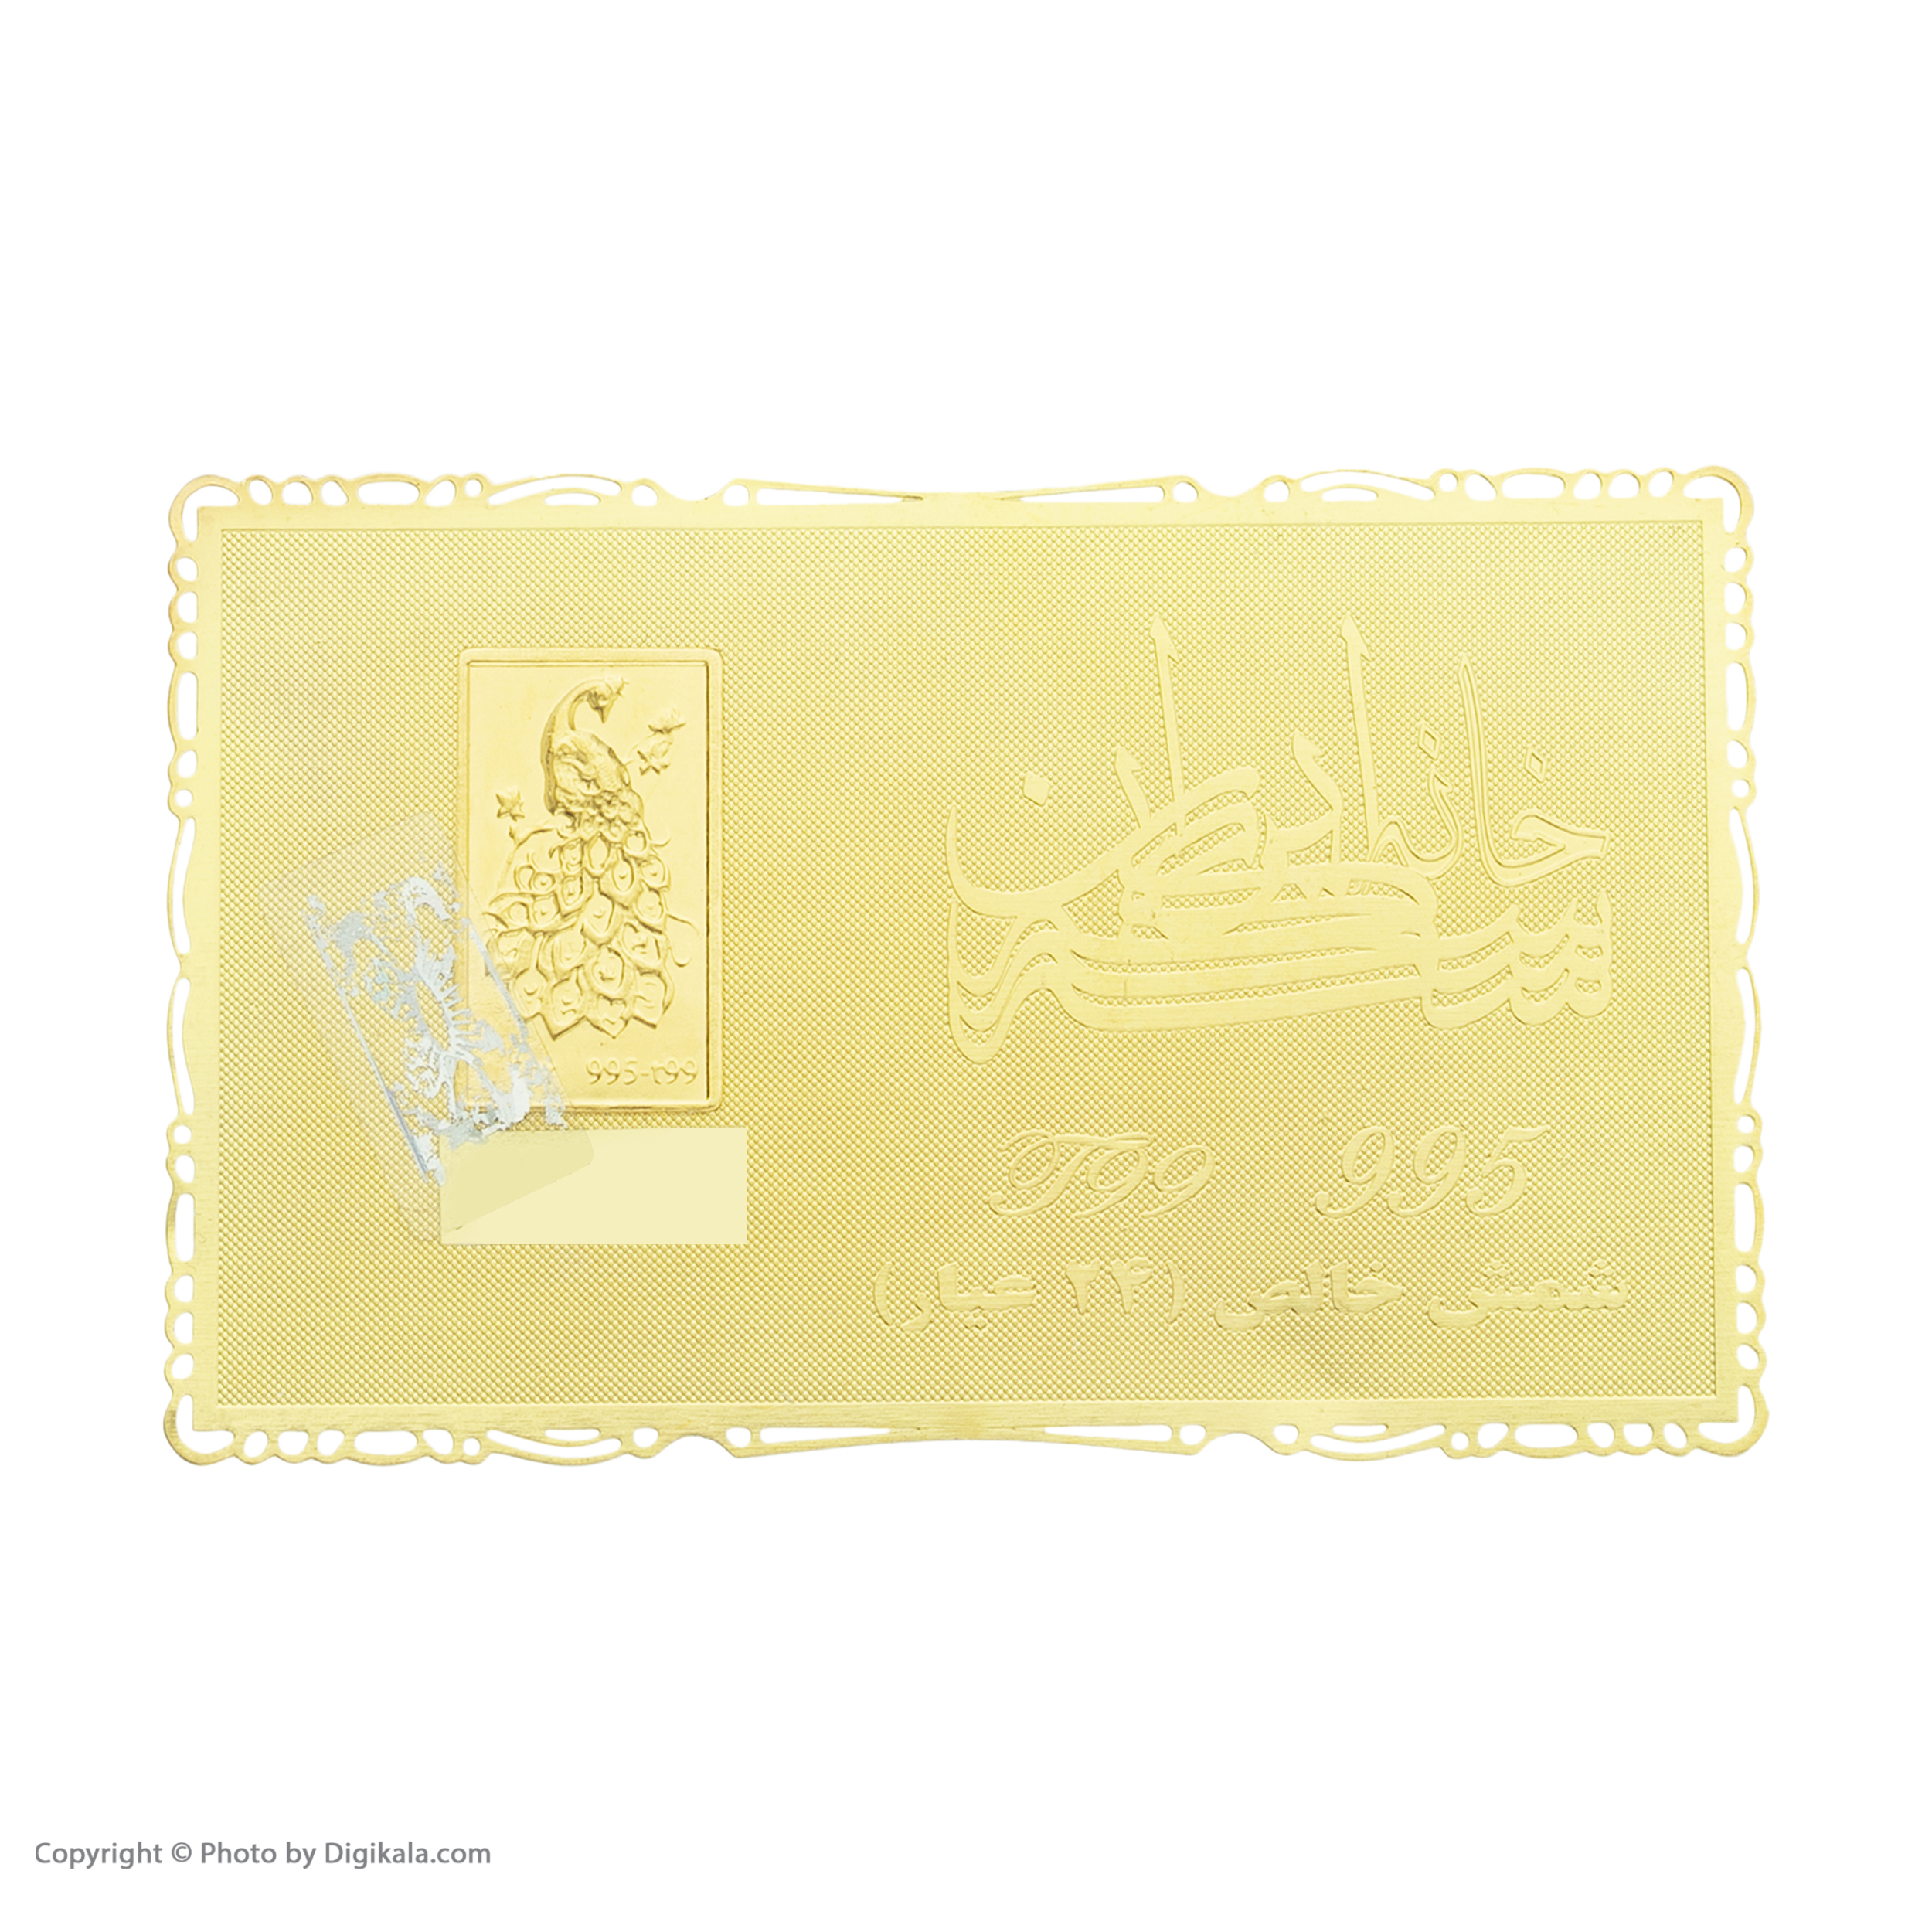 طلا گرمی 24 عیار خانه سکه ایران کد 005 -  - 2